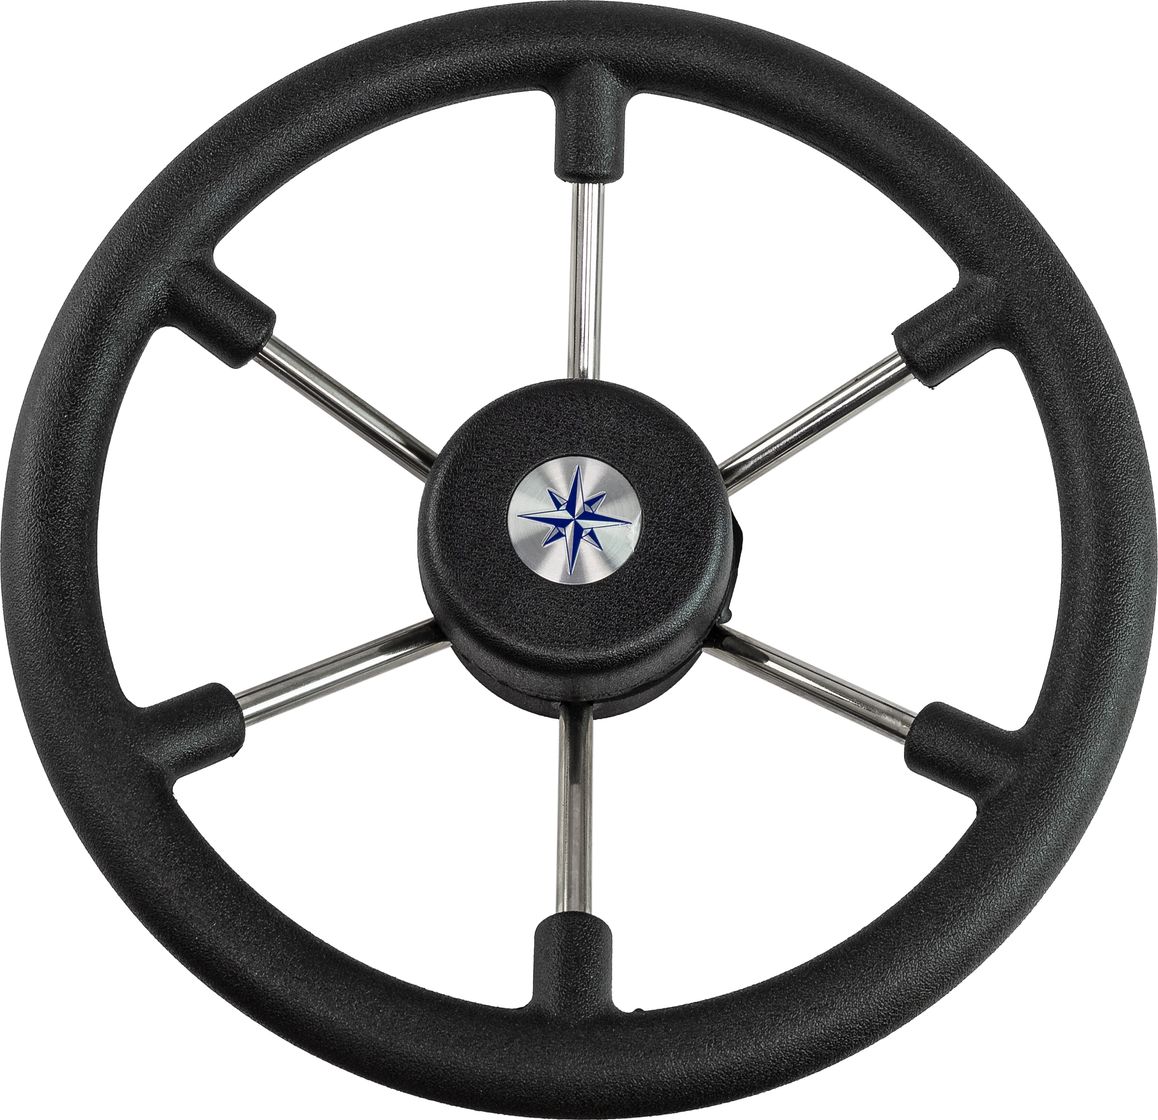 Рулевое колесо LEADER TANEGUM черный обод серебряные спицы д. 330 мм VN7330-01 рулевое колесо leader wood деревянный обод серебряные спицы д 360 мм vn7360 33